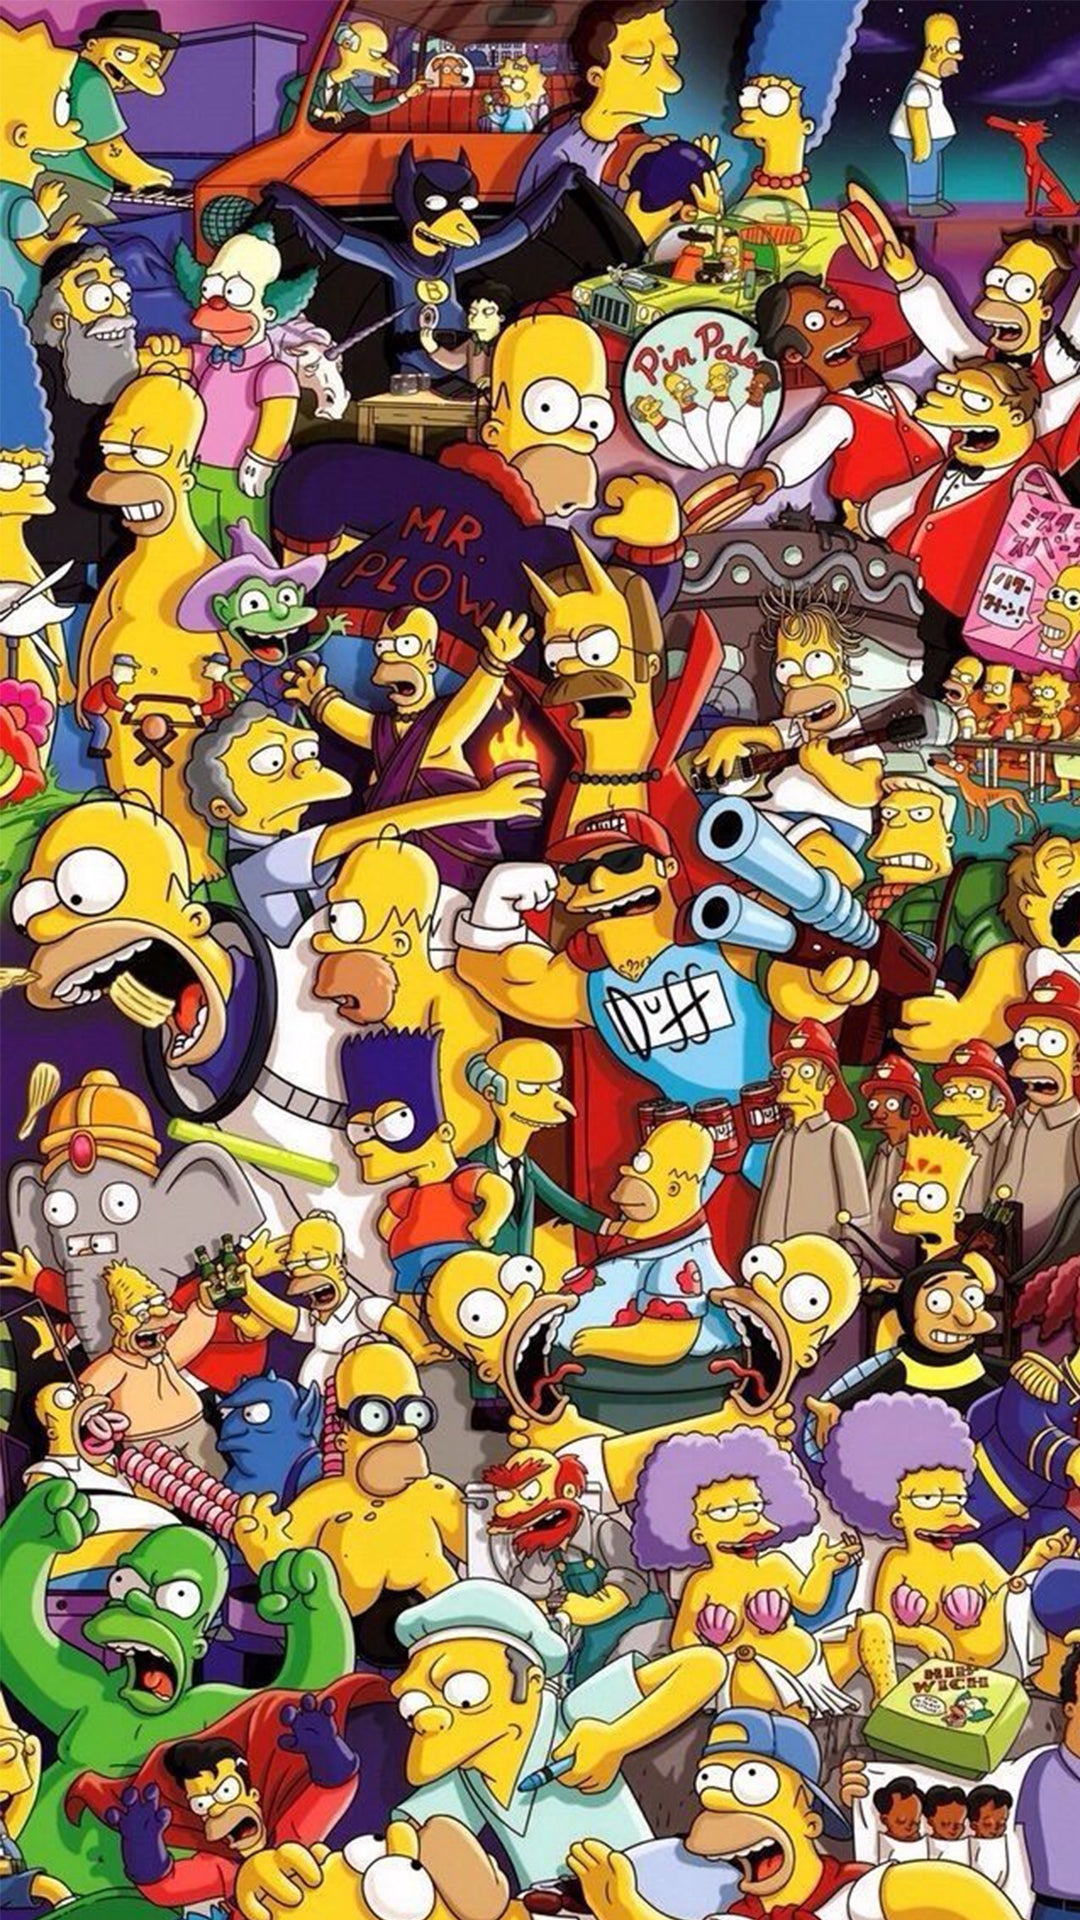 Rassemblement des têtes des personnages de la série et des différents versions d’Homer Simpson.